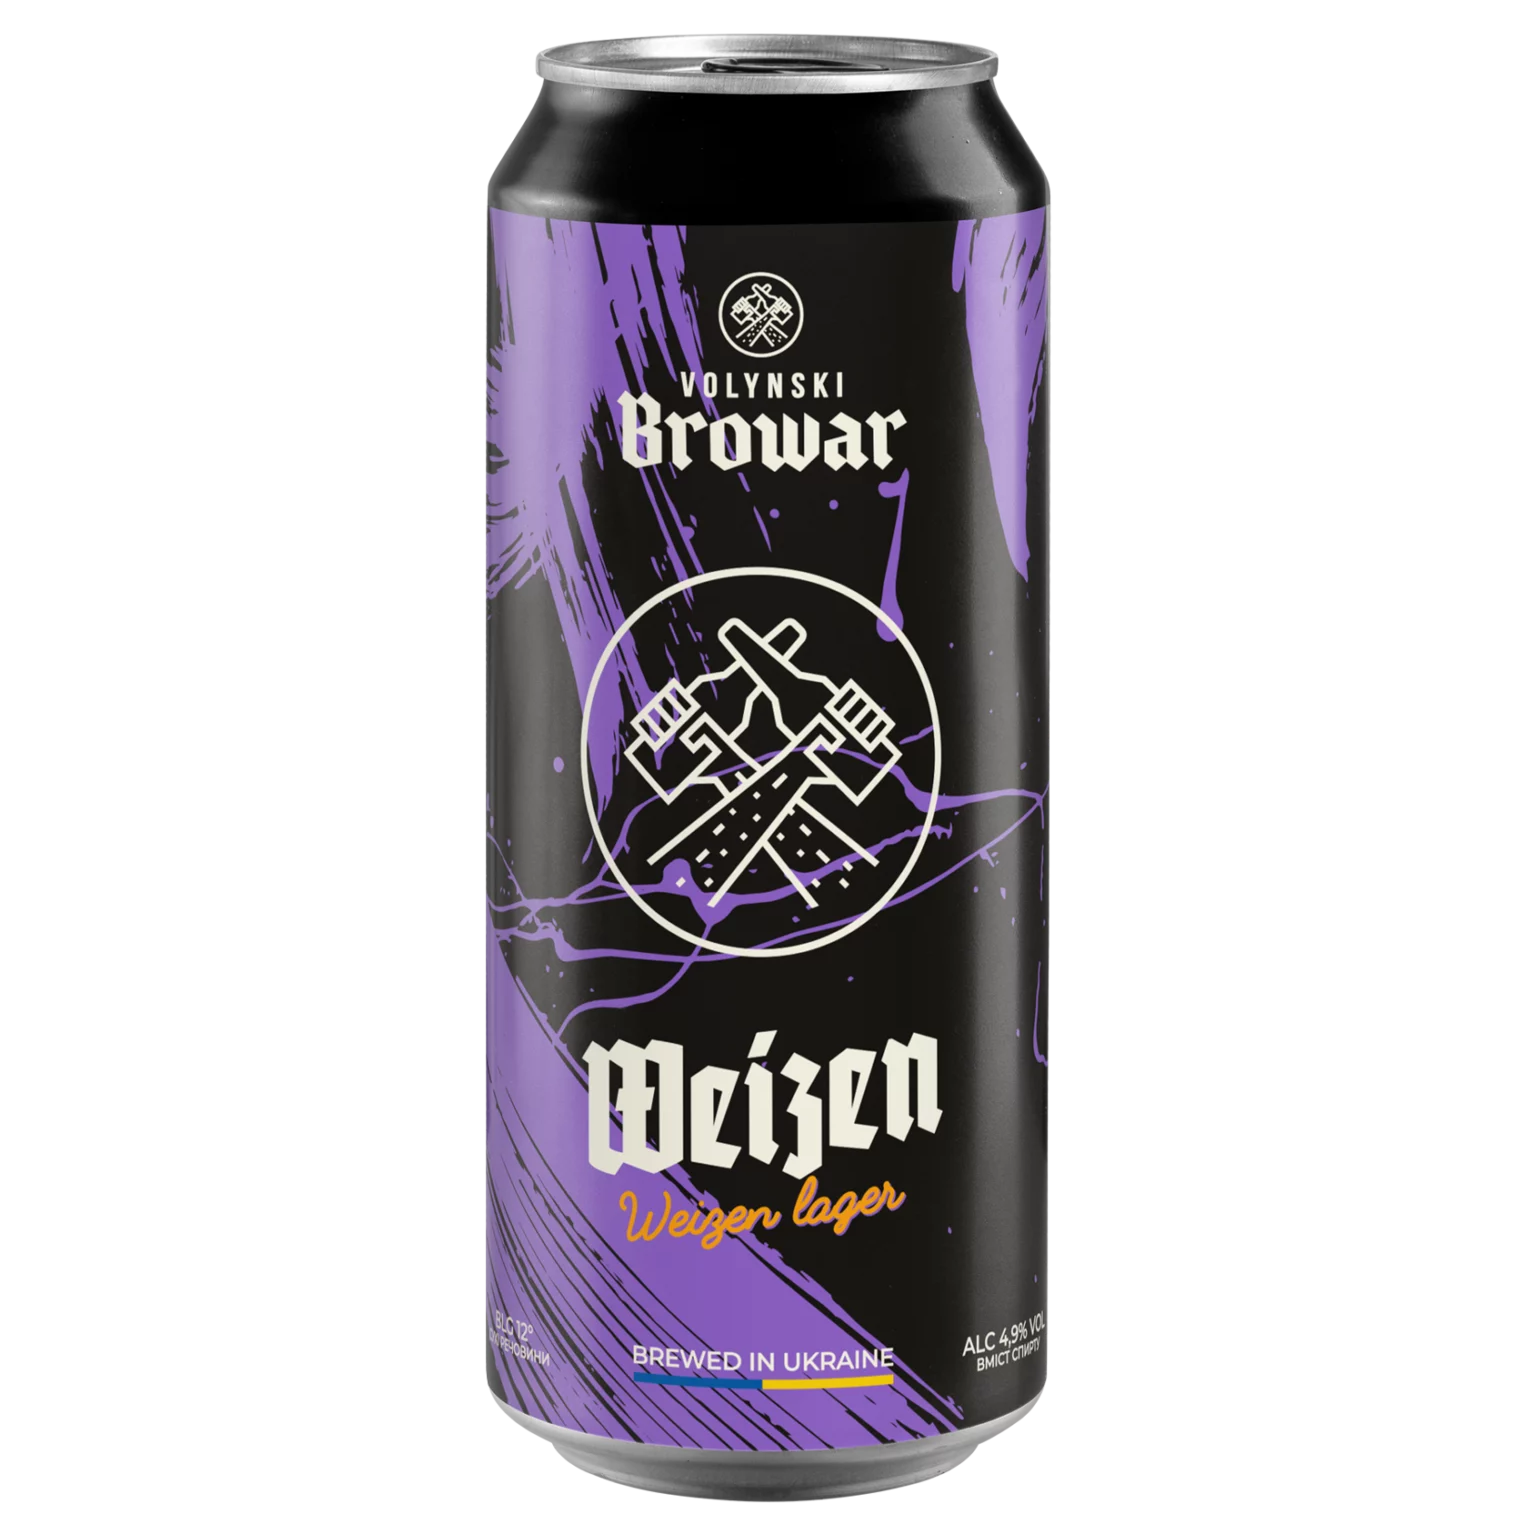 Пиво Volynski Browar Weizen, светлое, нефильтрованное, 4,9%, ж/б, 0,5 л - фото 1